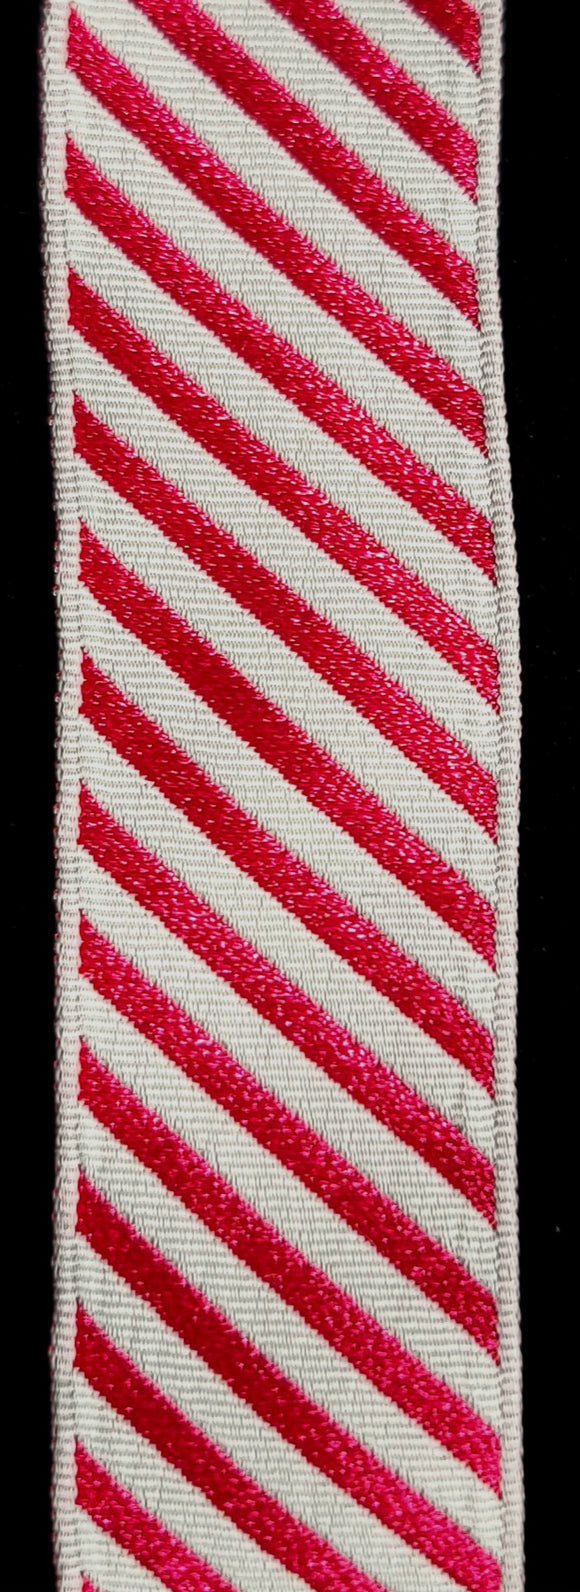 Ribbon, Air Force Cross